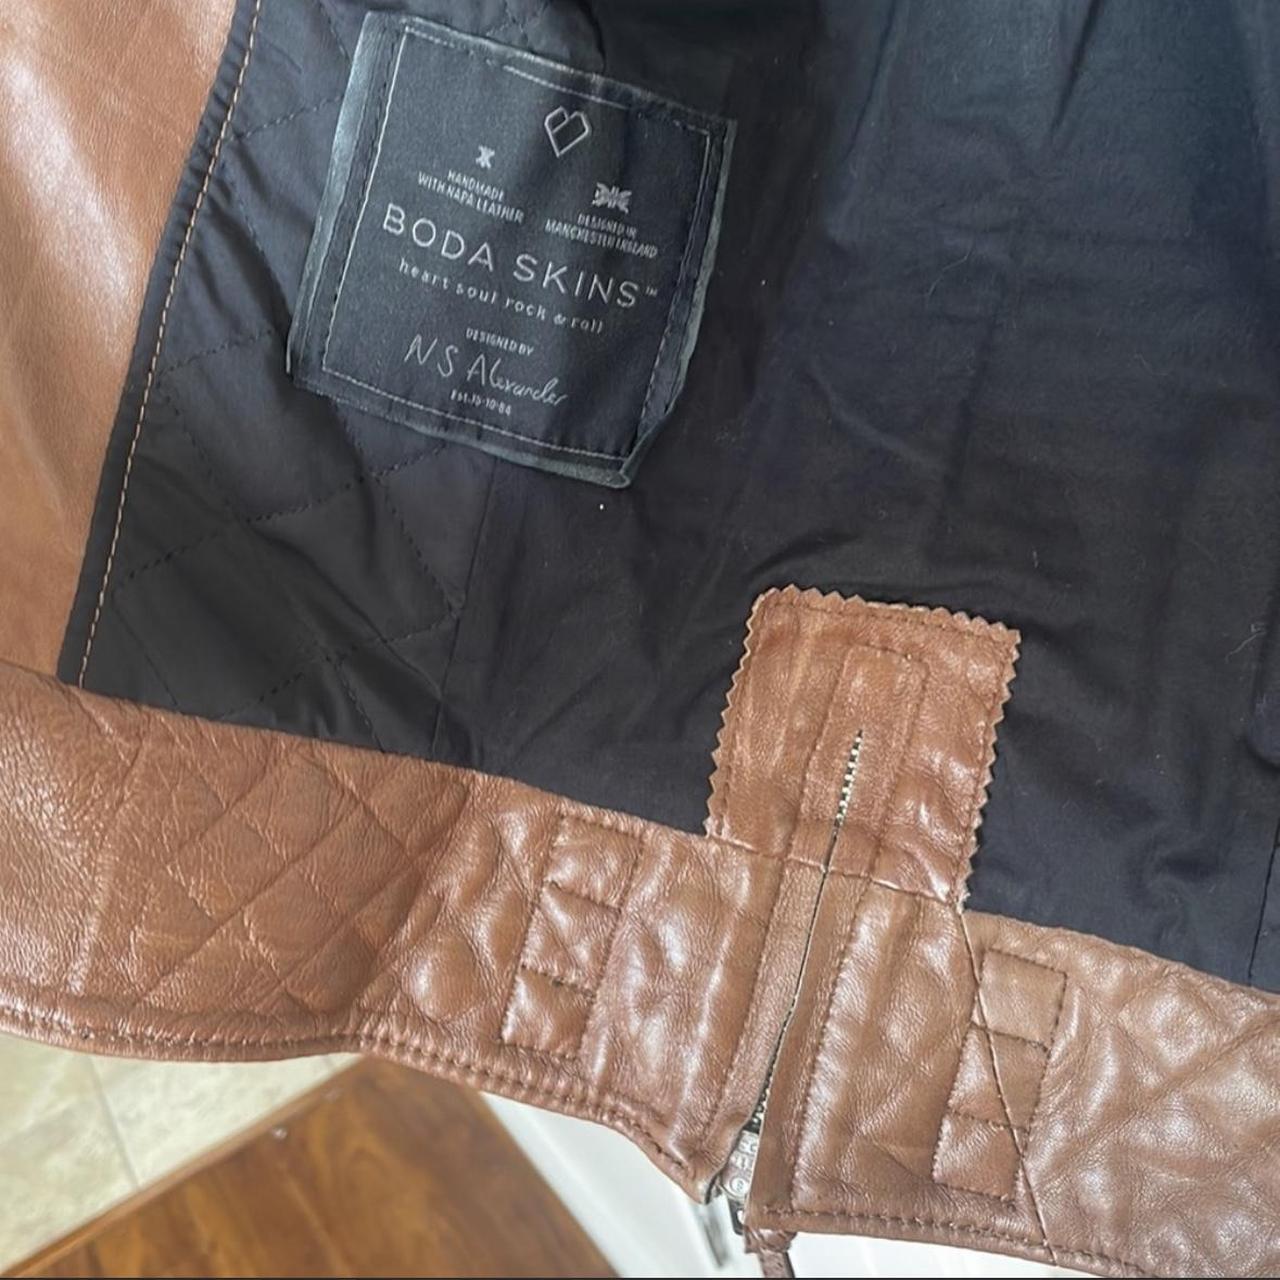 Boda Skins Women's Tan Jacket (7)